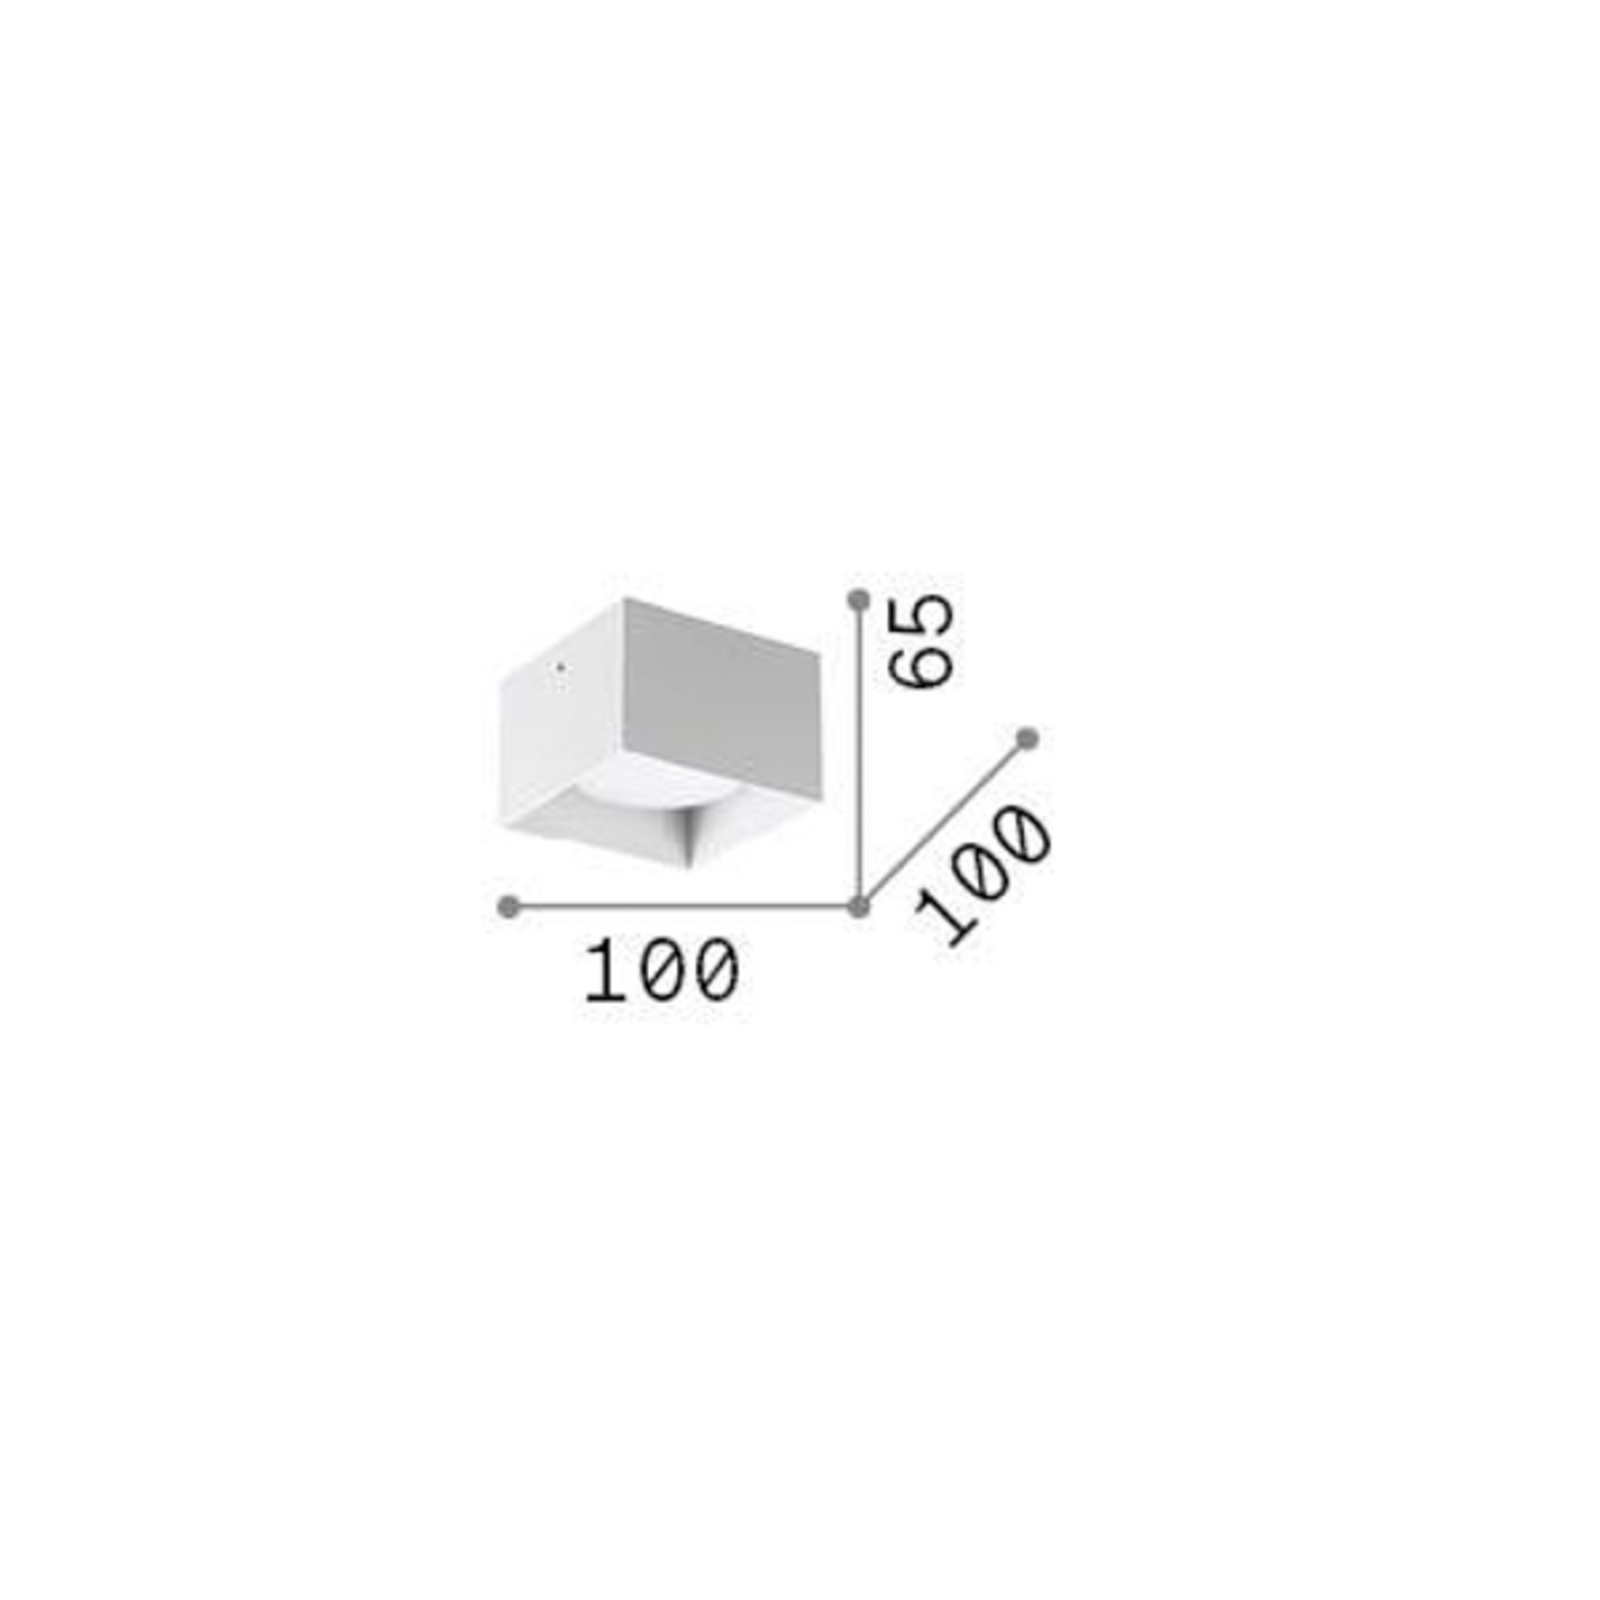 Ideal Lux downlight Spike Square, blanco, aluminio, 10 x 10 cm